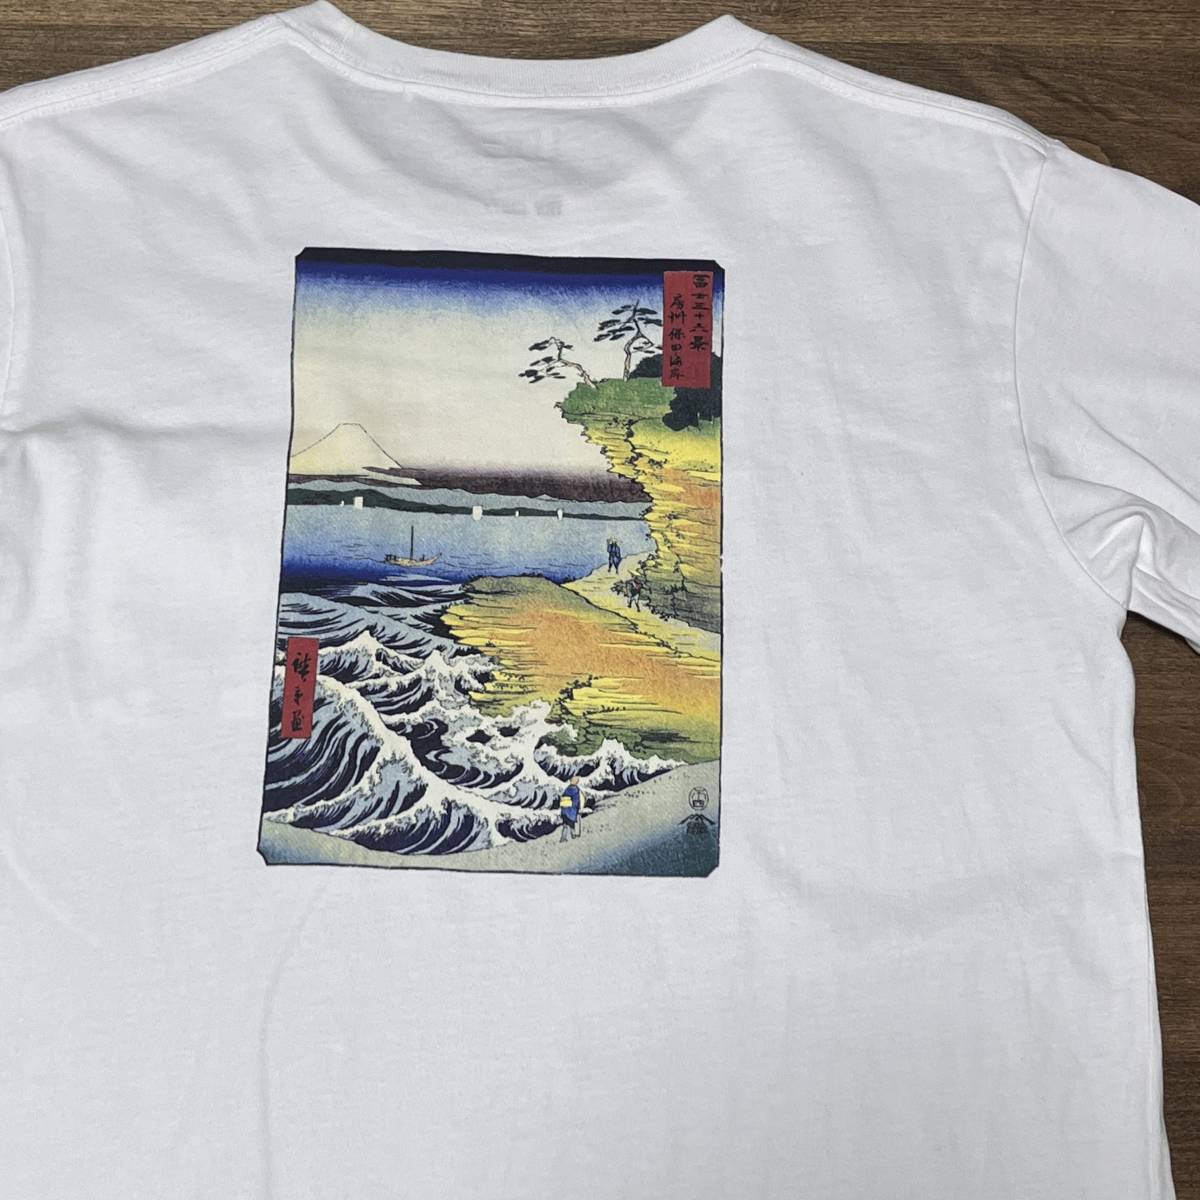 ◎(ユニクロ) 歌川広重 不二三十六景 富士三十六景 房州保田ノ海岸 Tシャツ Thirty-six Views of Mount Fuji Hiroshige shirtの画像1